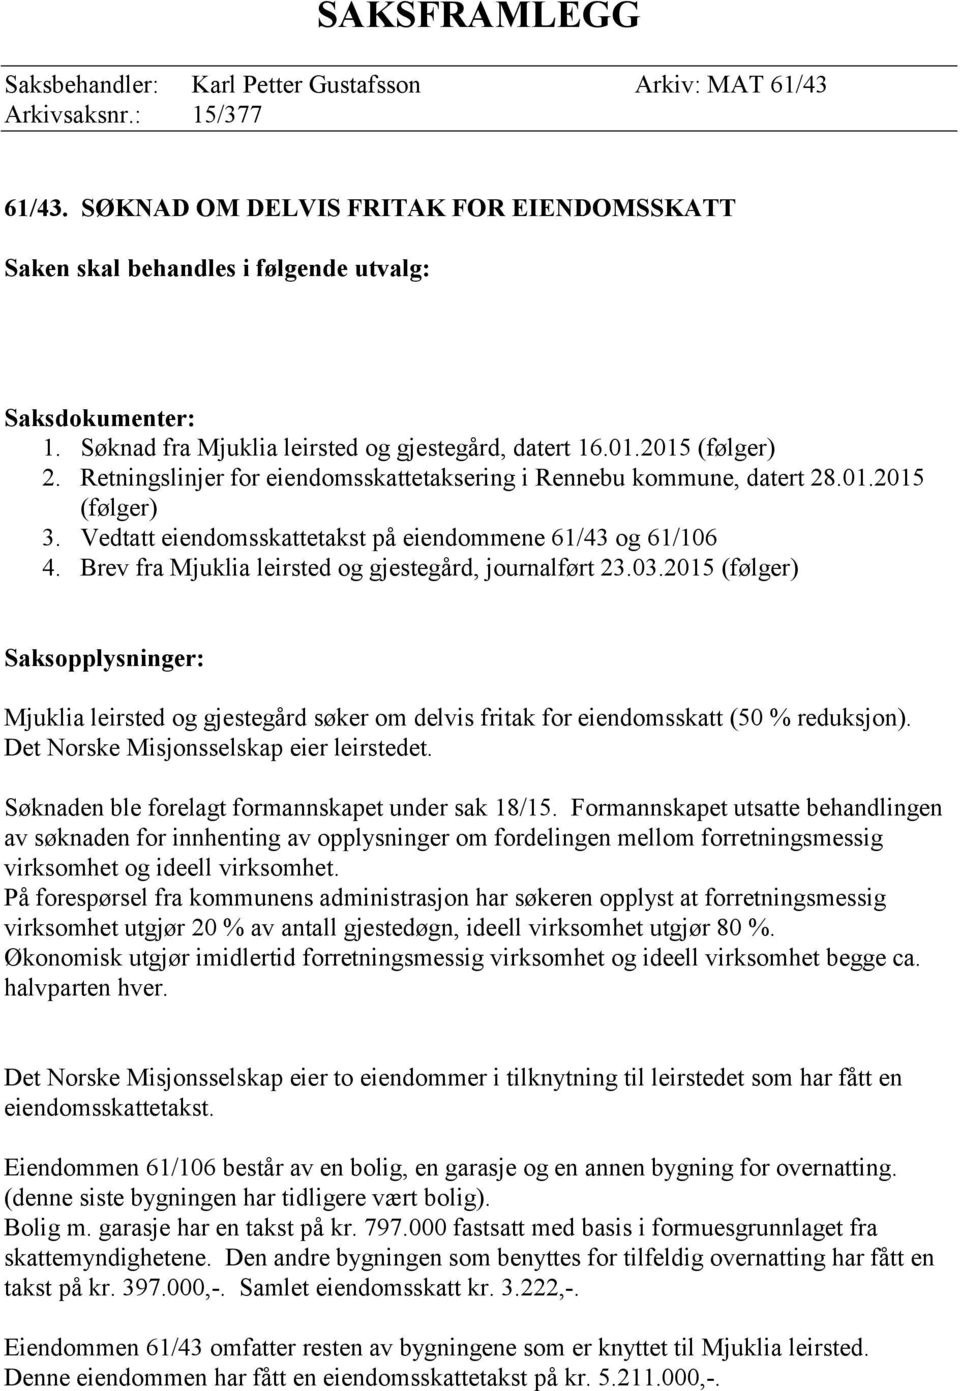 Vedtatt eiendomsskattetakst på eiendommene 61/43 og 61/106 4. Brev fra Mjuklia leirsted og gjestegård, journalført 23.03.